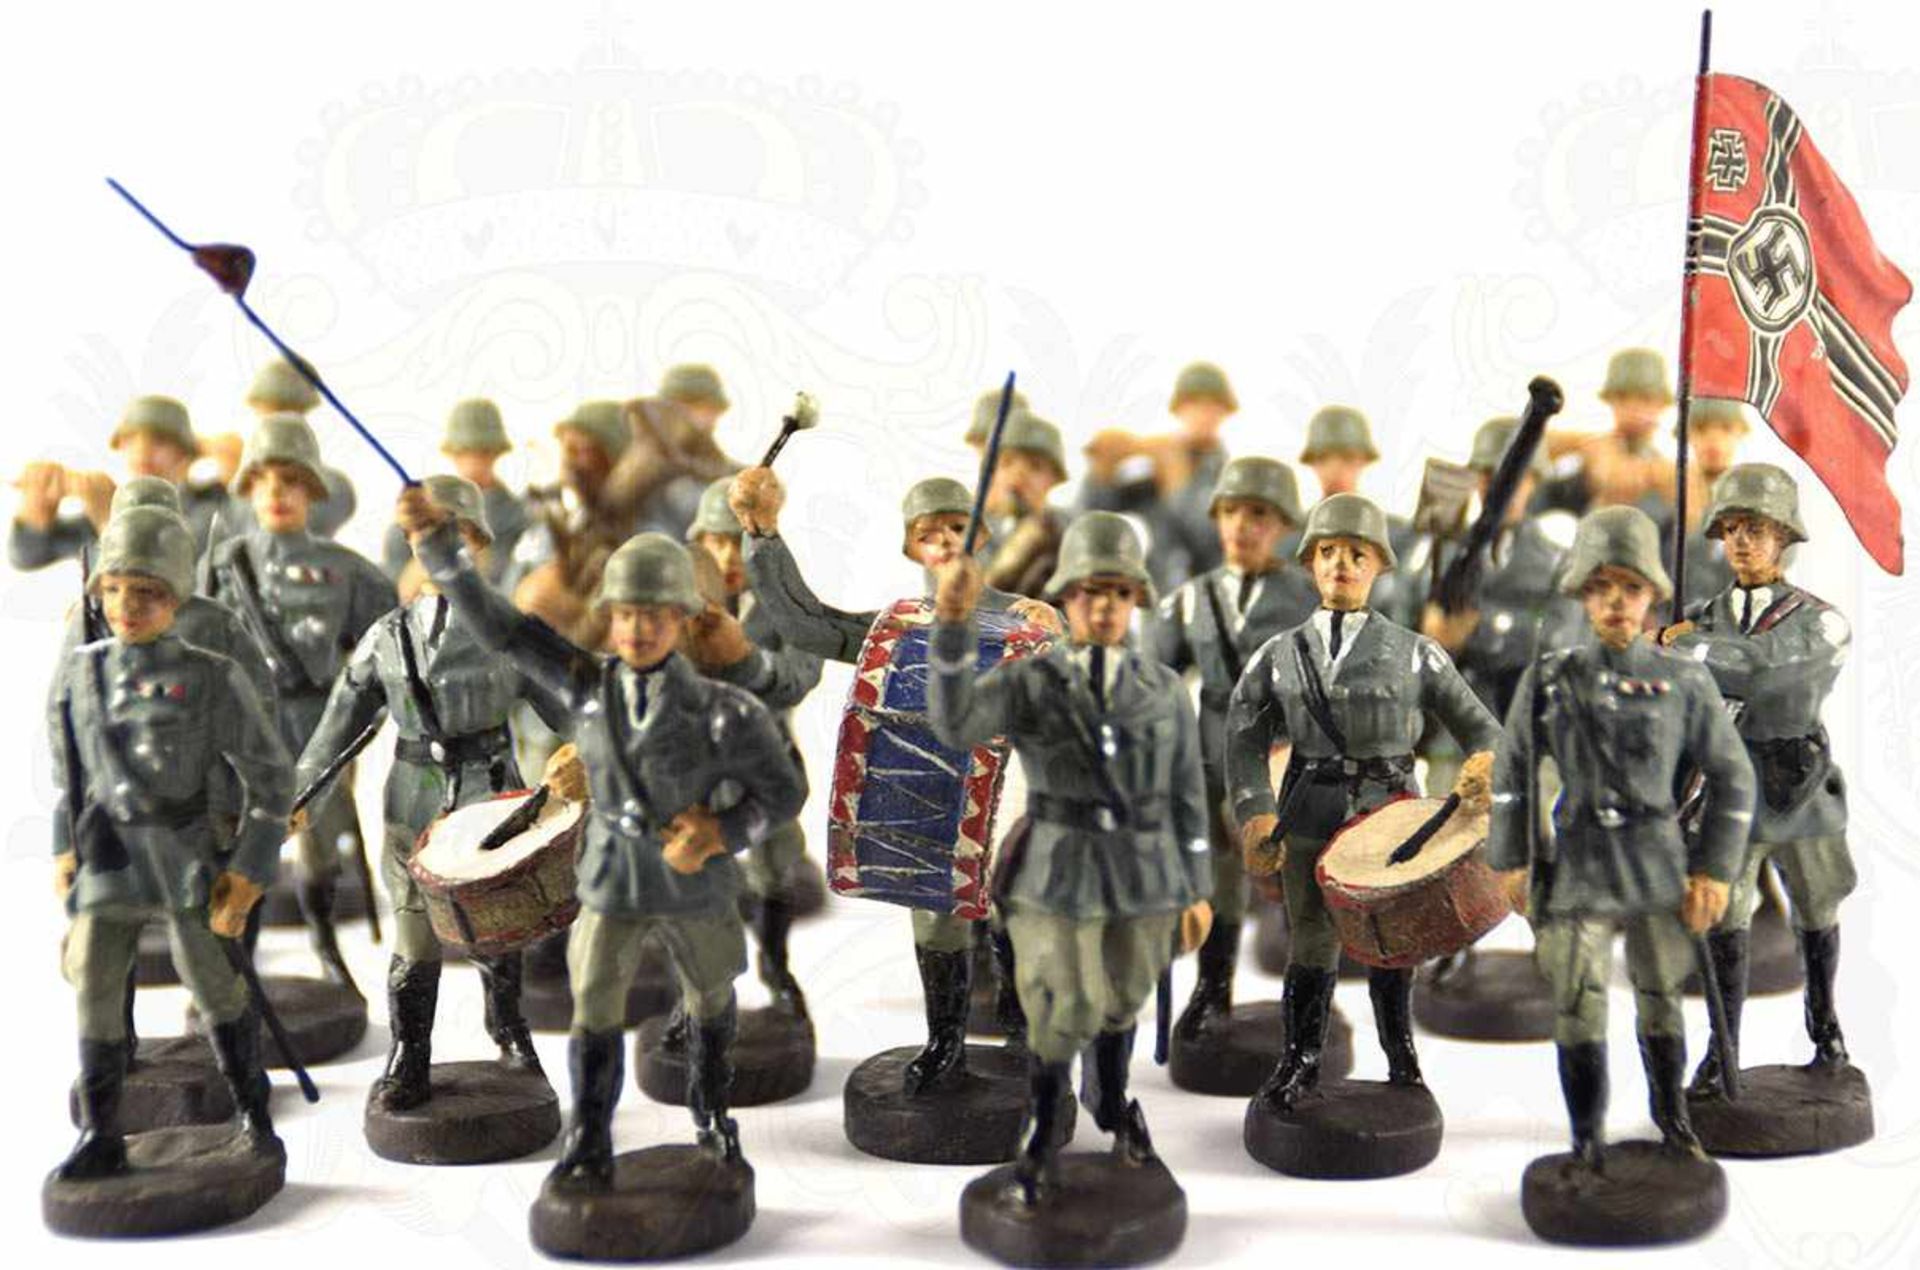 MUSIKZUG DER WEHRMACHT, 24 Figuren, dabei: Musikmeister, 4 Offiziere mit Säbel, Mannschaften mit - Image 2 of 2